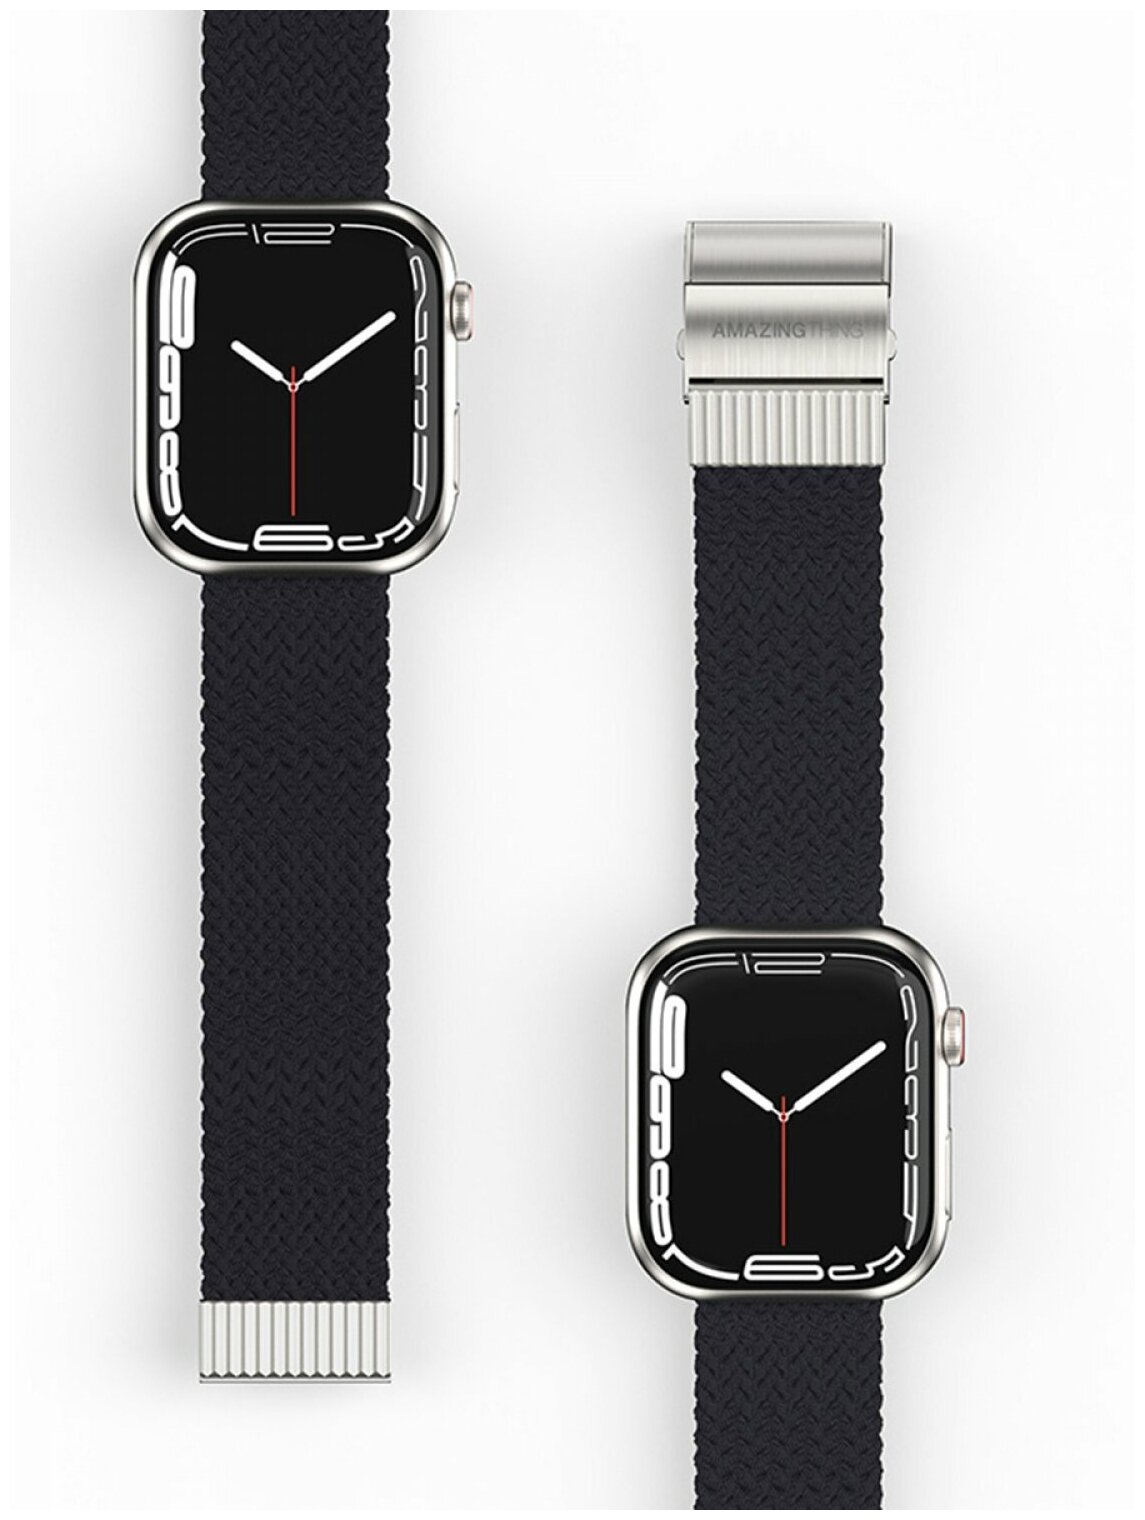 Ремешок для Apple Watch 45mm Amazingthing Weave Black, сменный тканевый браслет для умных часов Эпл Вотч, плетёный для наручных часов Watch 3/4/5/SE/6